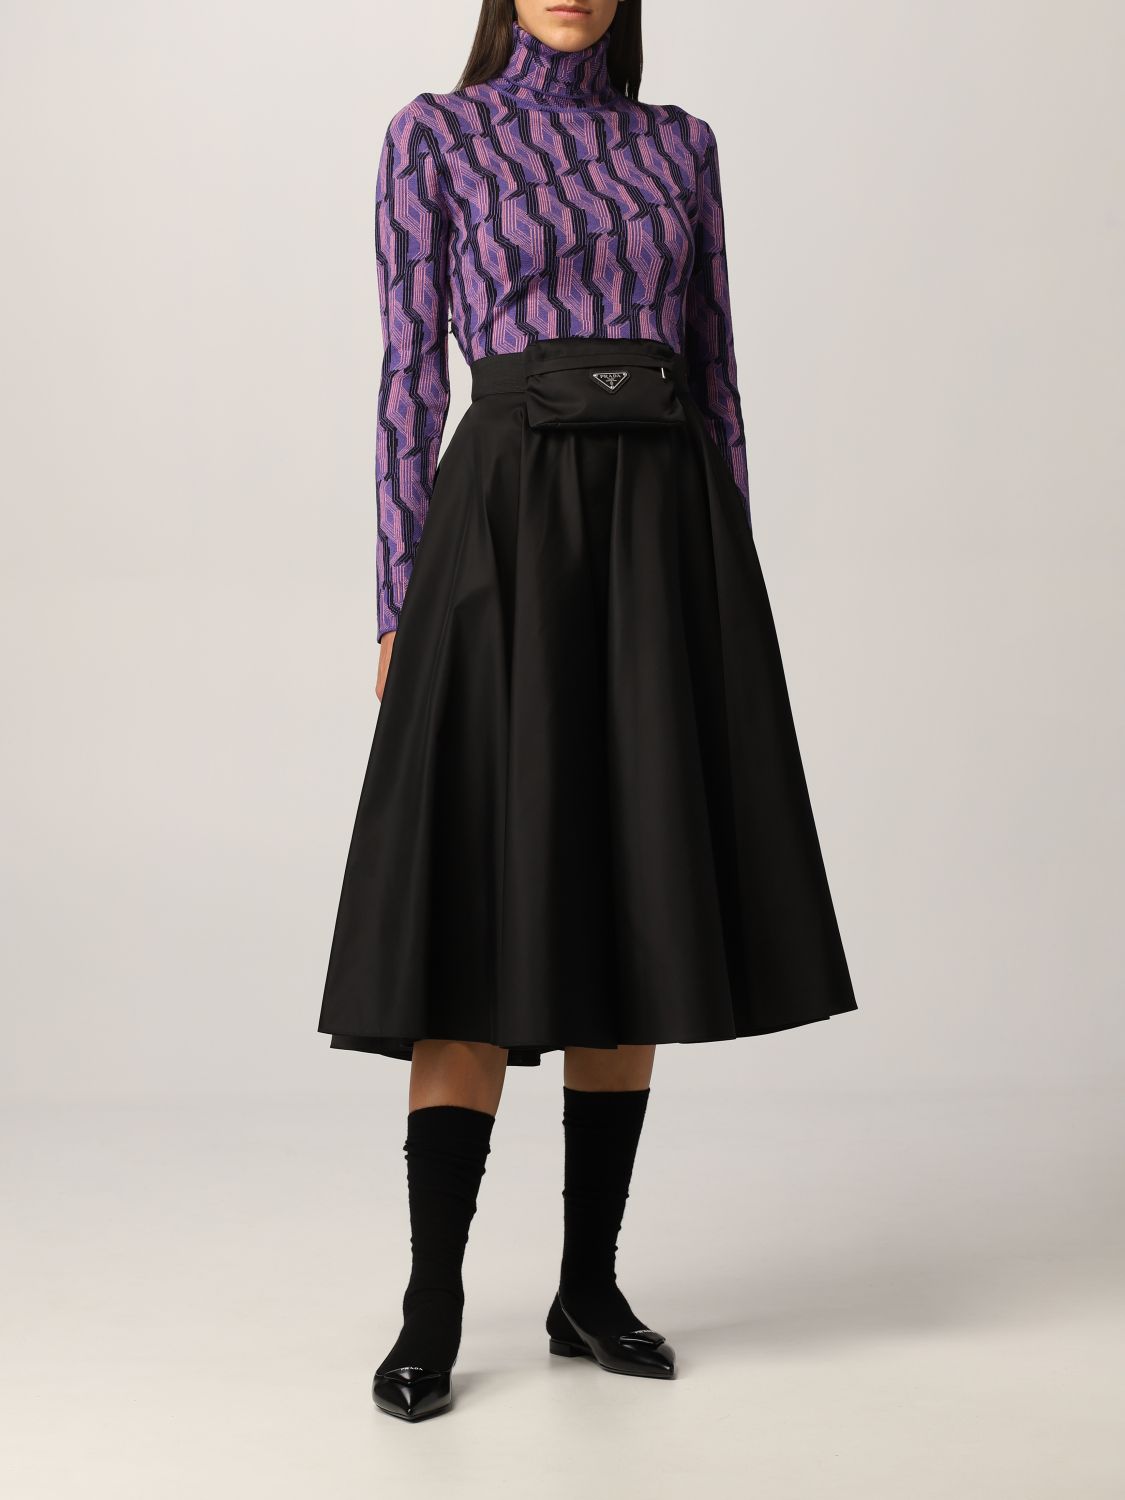 Jersey Prada: Jersey de cuello alto de Prada en lana virgen estampada violeta 2